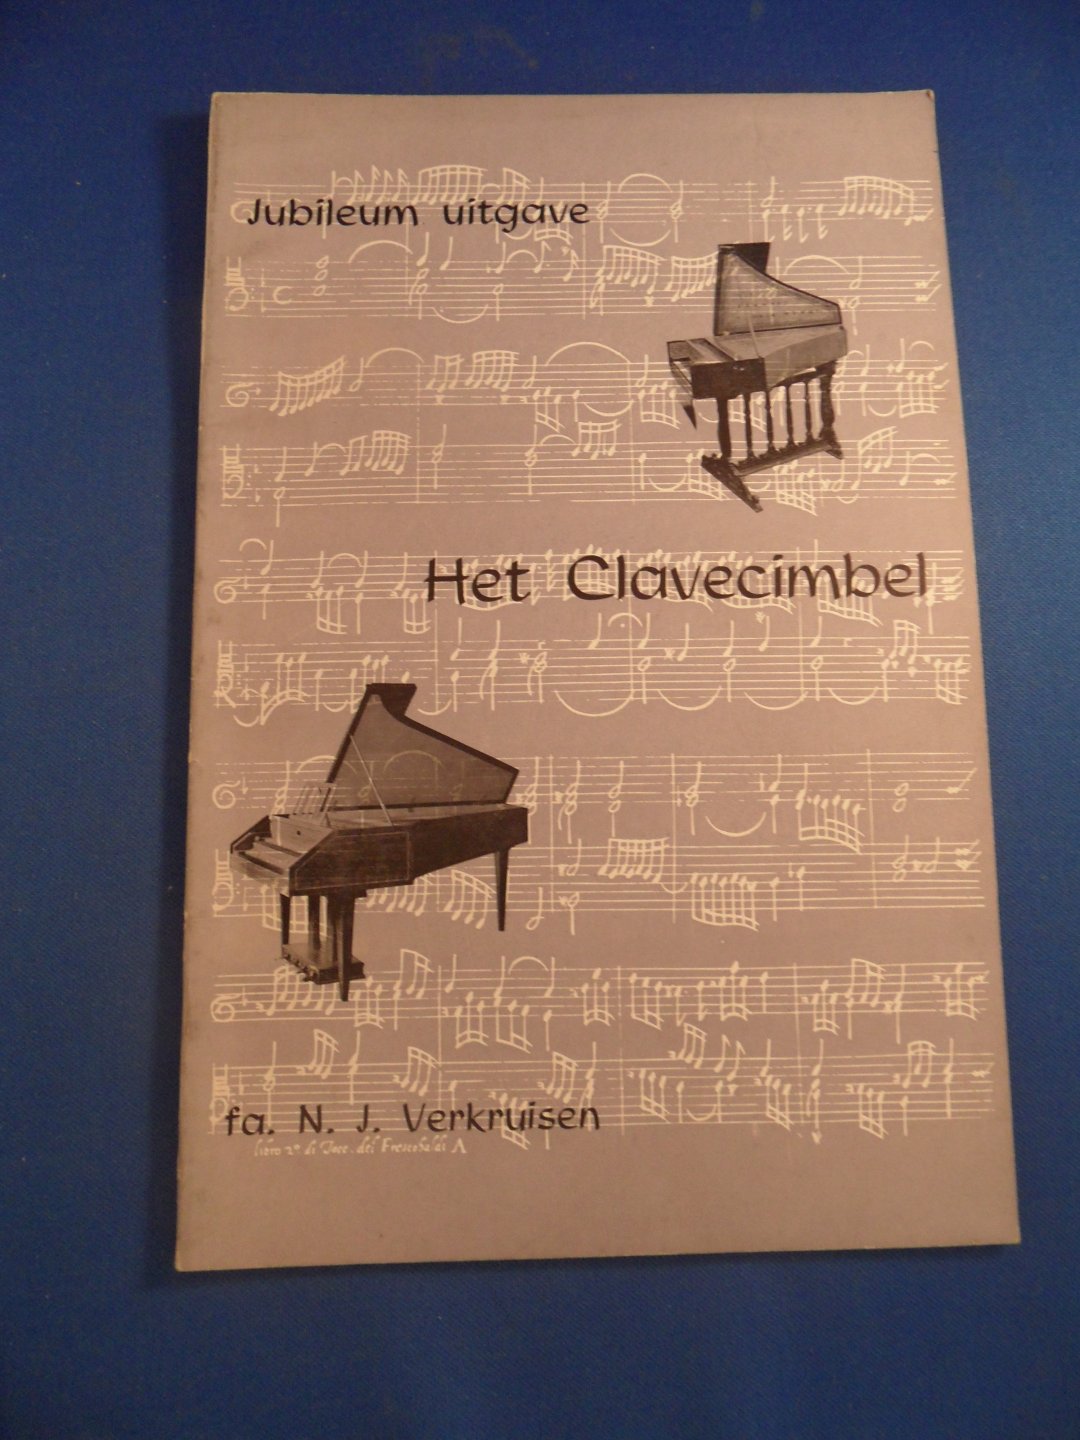 Verkruisen, N.J. - Het Clavecimbel. Jubileum uitgave. Beknopte beschrijving en muzieklijst inzake het clavecimbel.